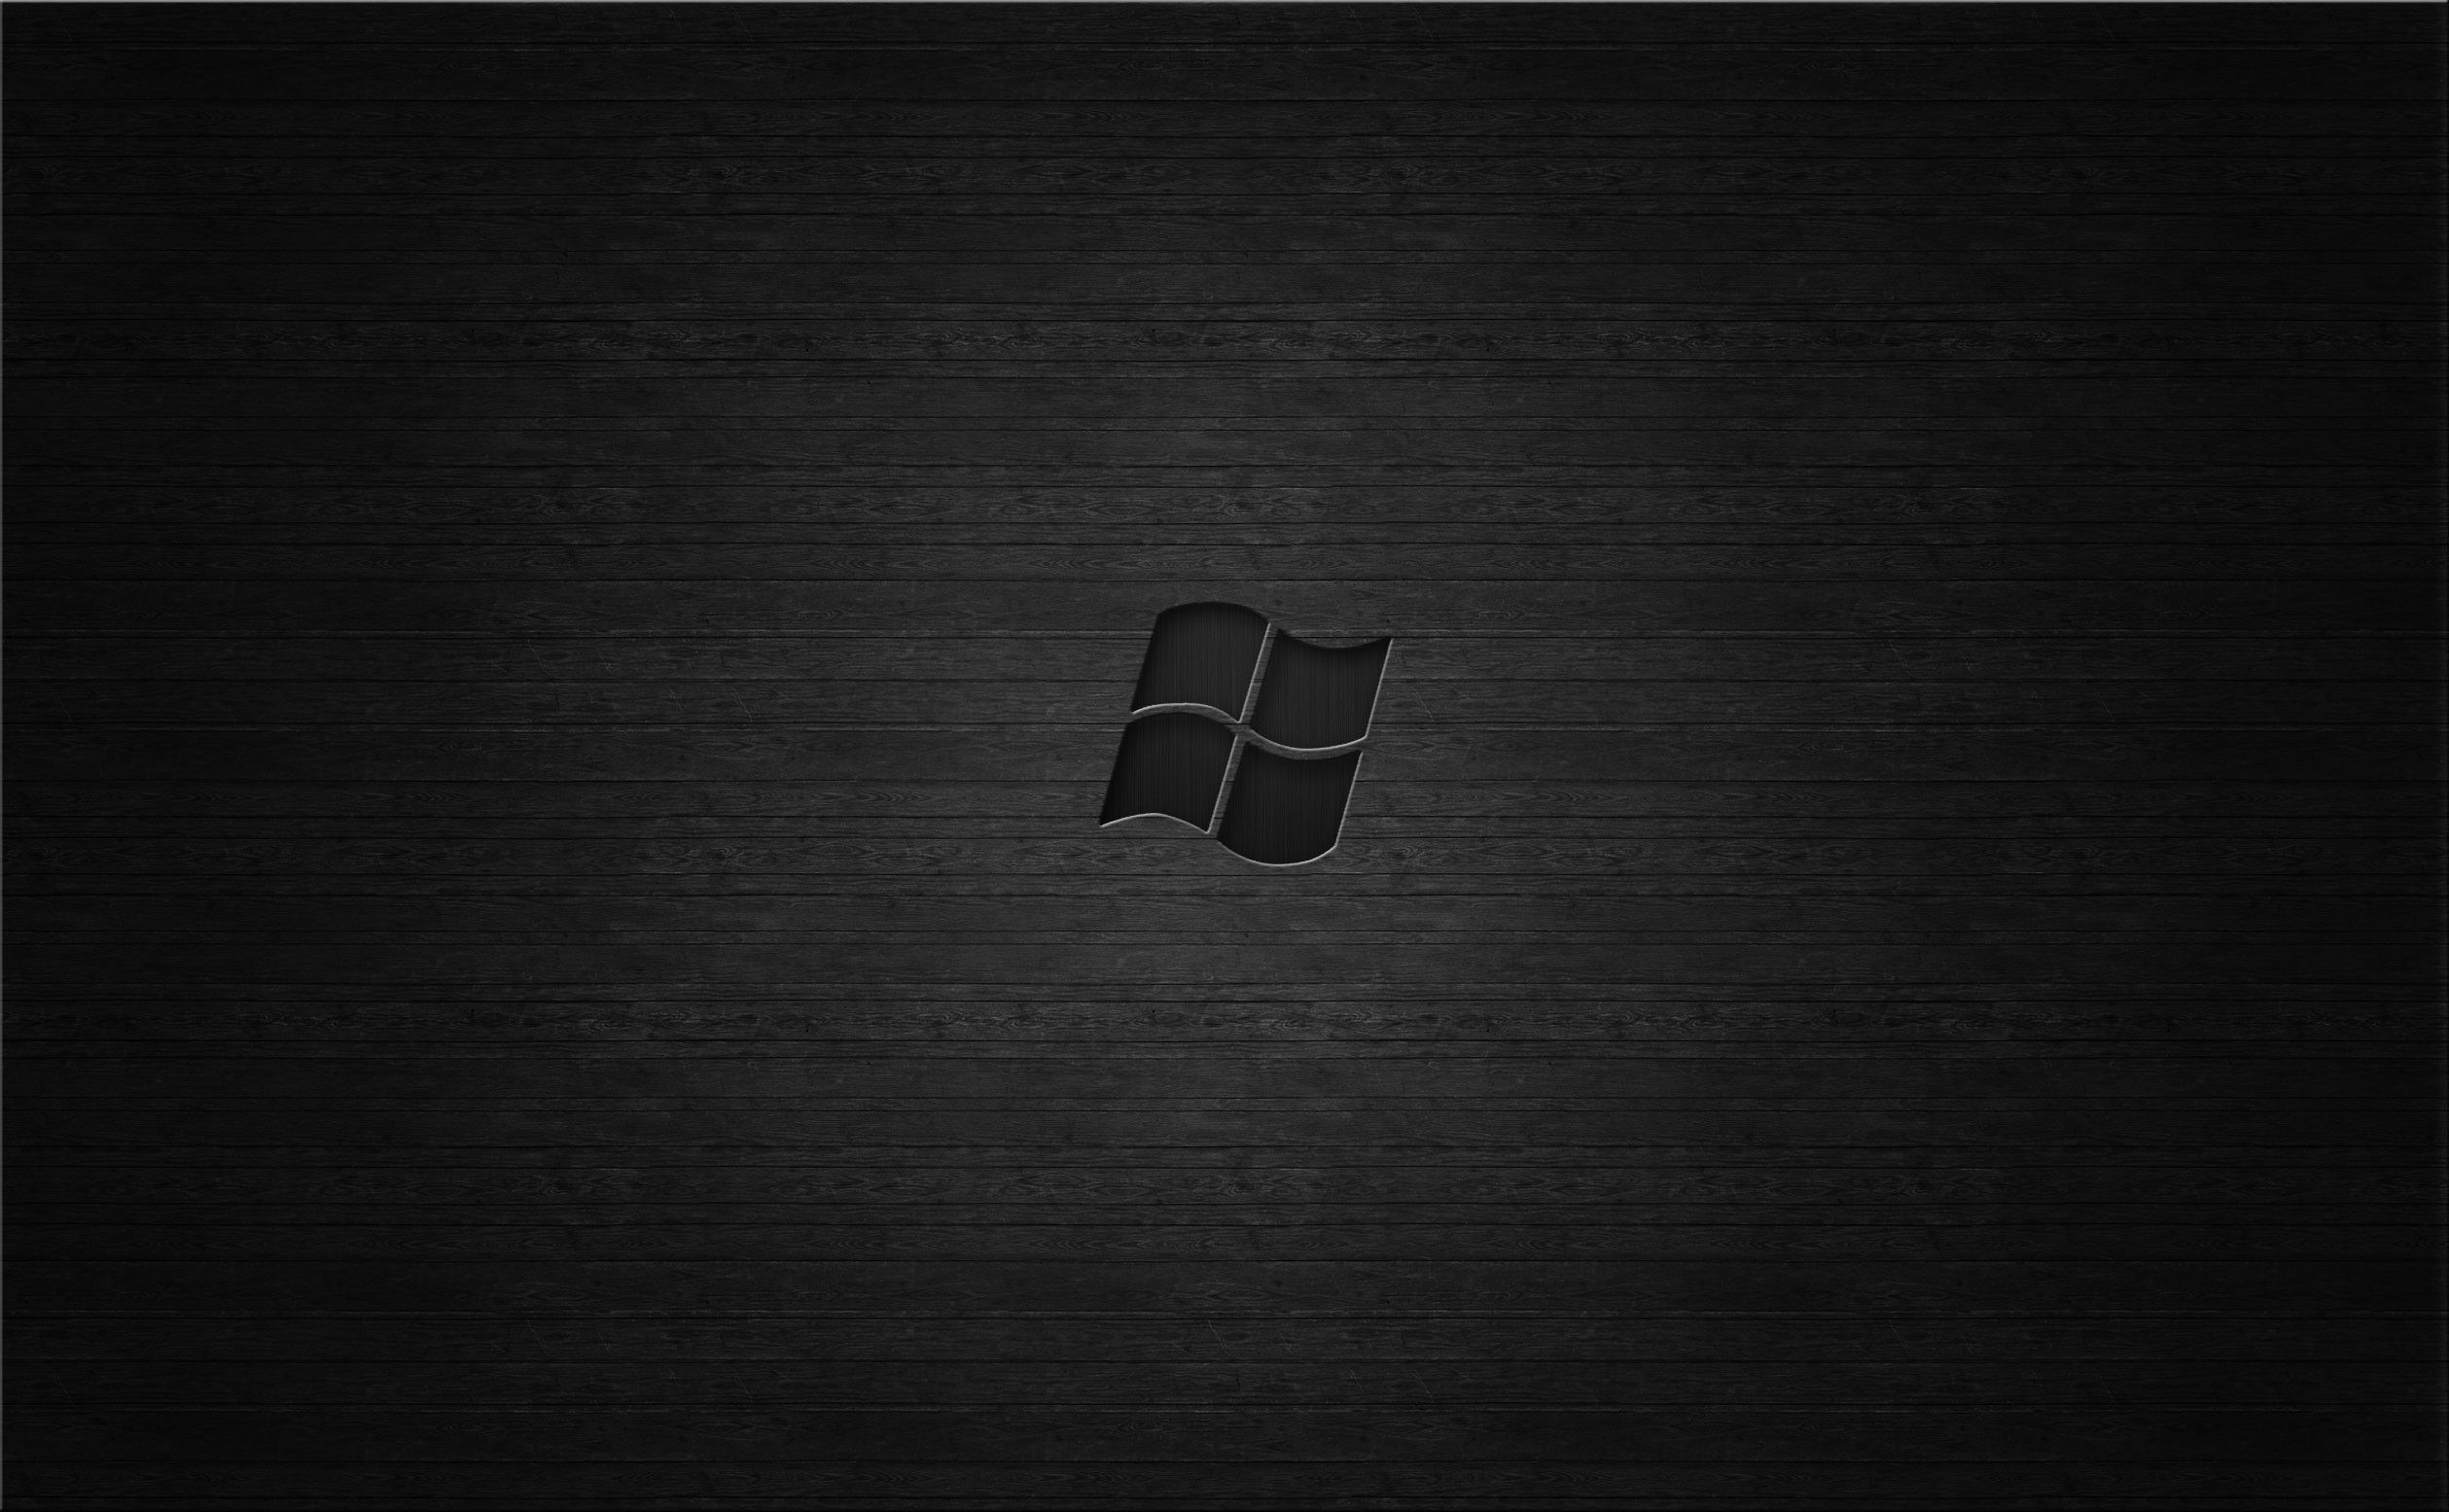 Bạn đang muốn thay đổi hình nền của máy tính Windows 7 của mình? Hãy tải ngay miễn phí bức hình nền Windows 7 Dark sang trọng và lịch lãm này để thêm phần mới lạ và thú vị cho màn hình desktop của bạn.